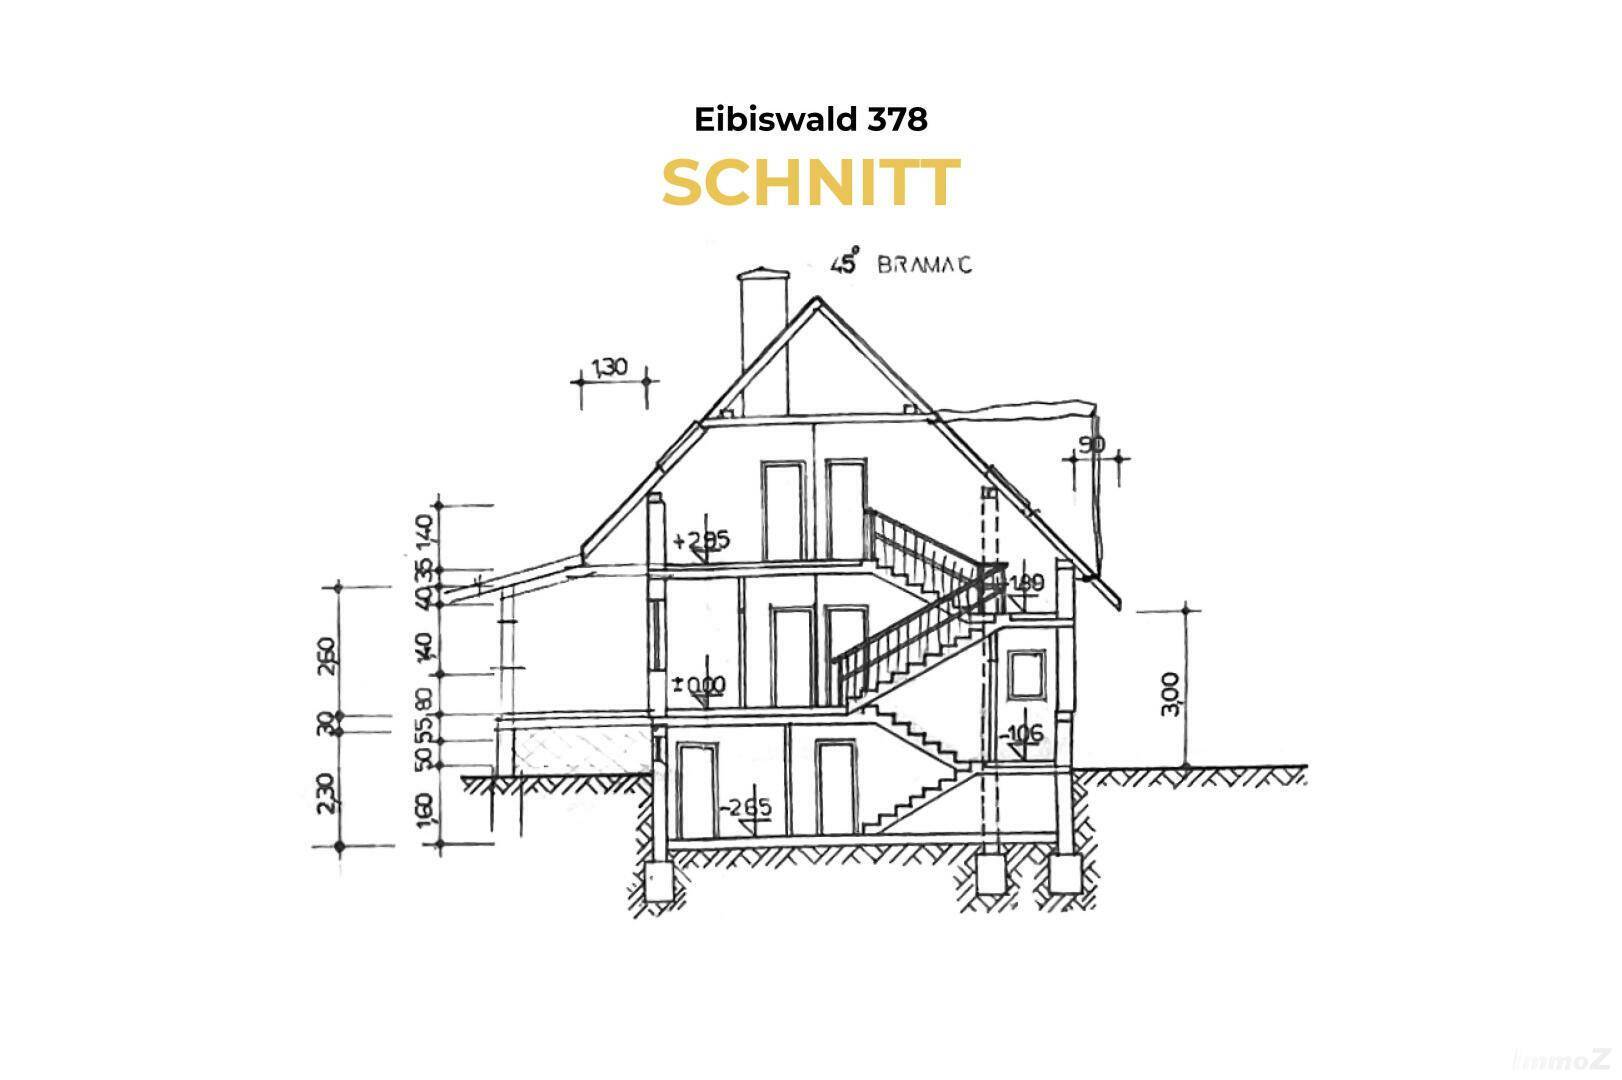 4 Eibiswald 378 - Schnitt